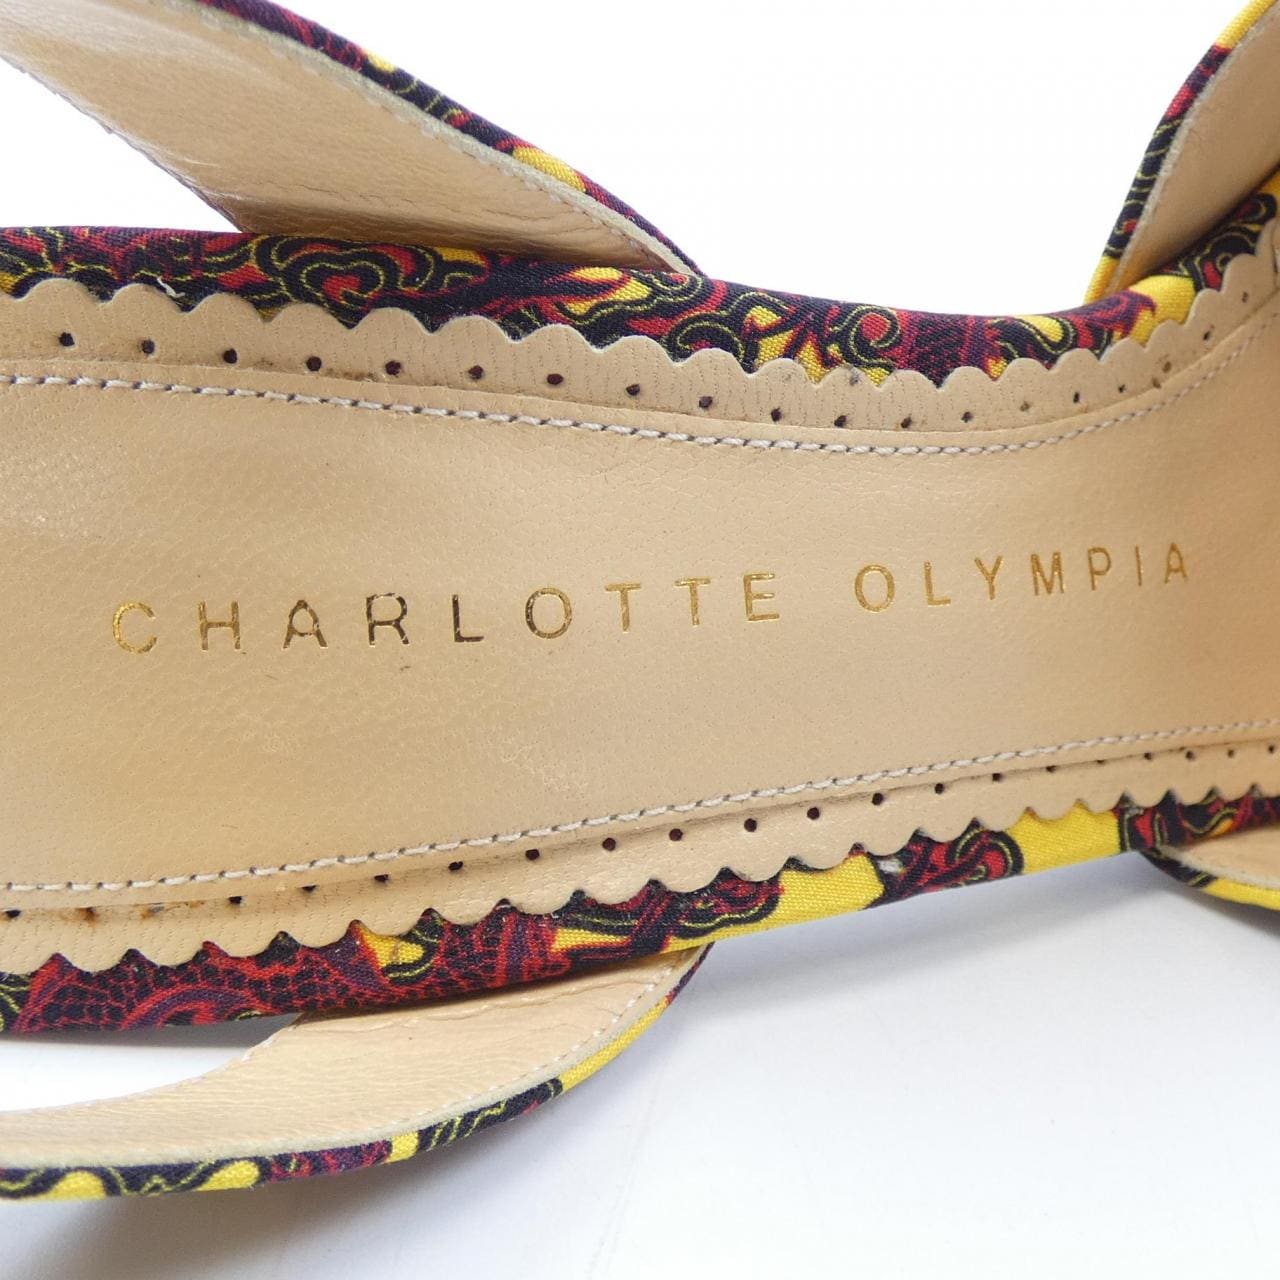 夏洛特奧林匹亞CHARLOTTE OLYMPIA涼鞋